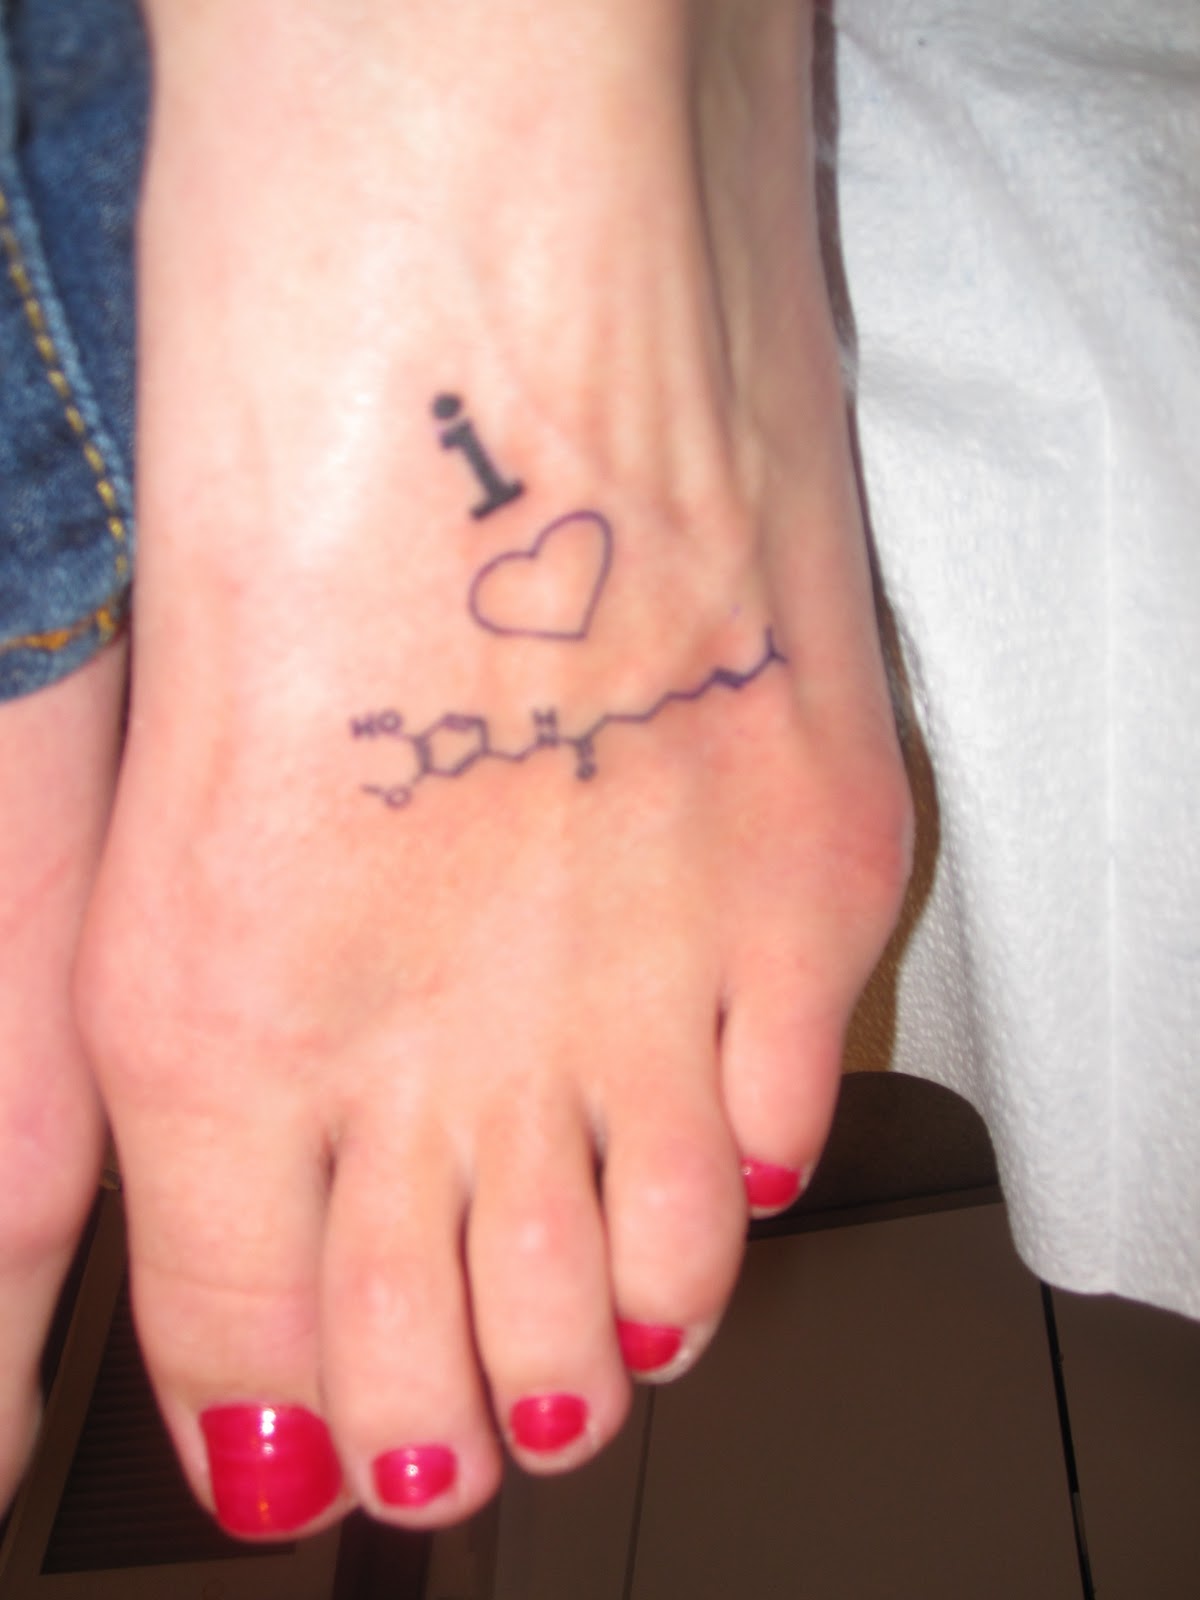 Small Foot Tattoo Design